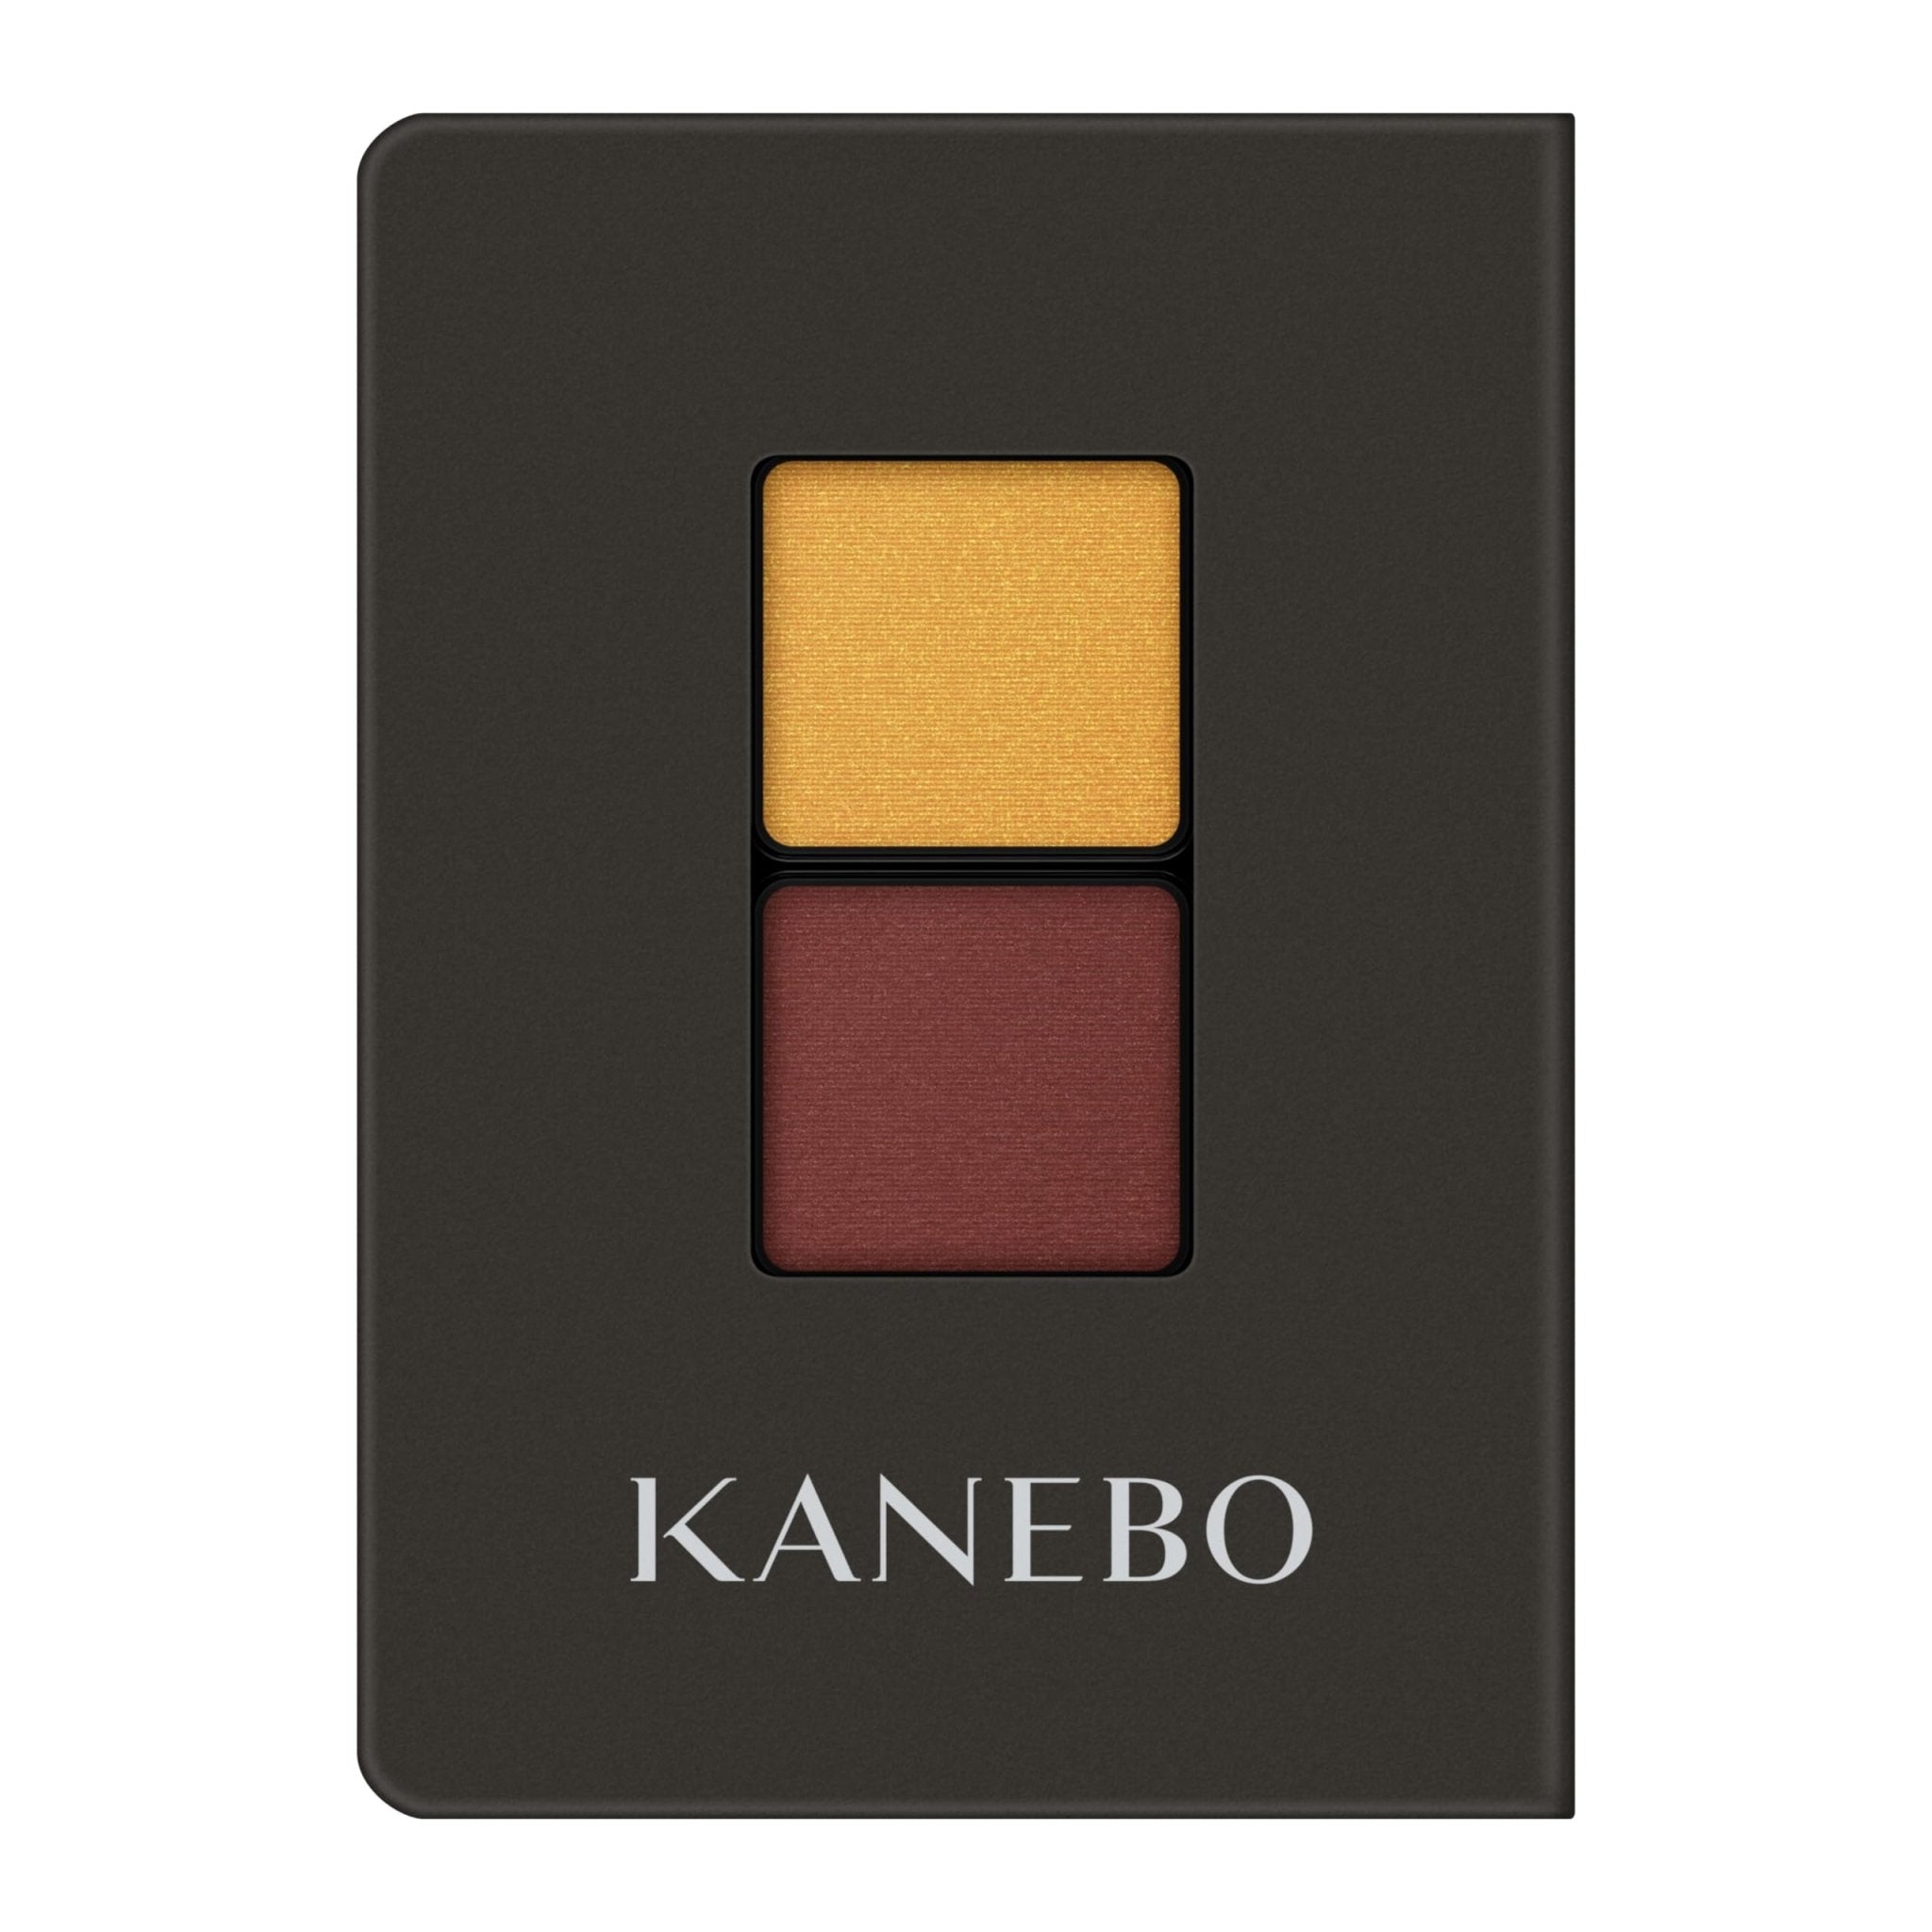 Kanebo Eye Color Duo No. 23 - Dual Shade Eyeshadow by Kanebo